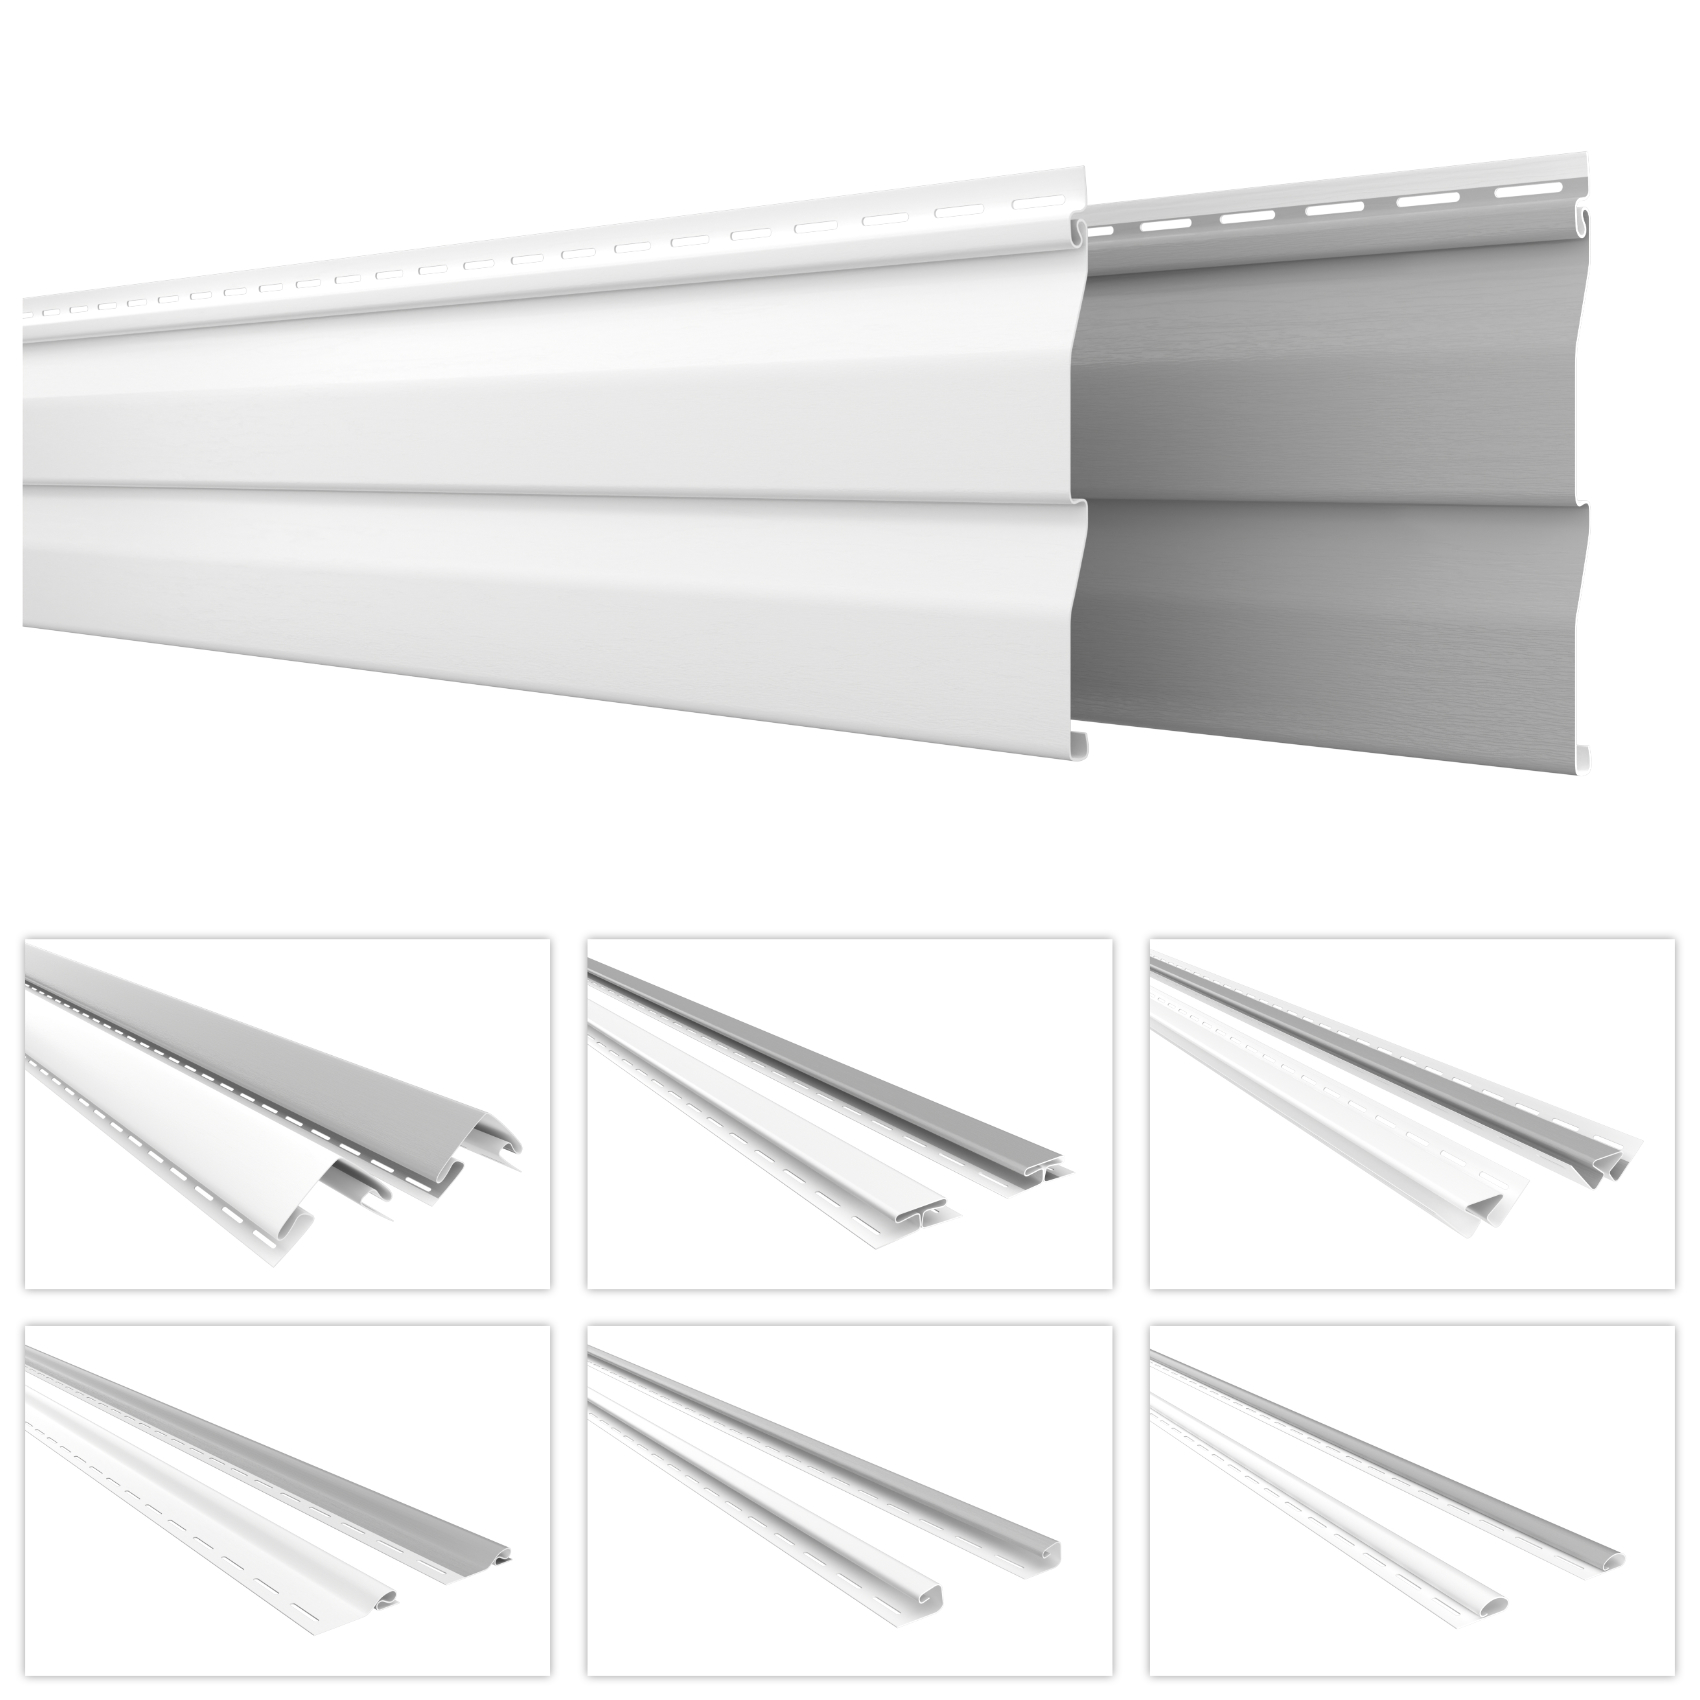 HEXIM Kunststoffpaneele und Zubehör für die Fassade - Fassadenverkleidung PVC-U Vinyl Siding